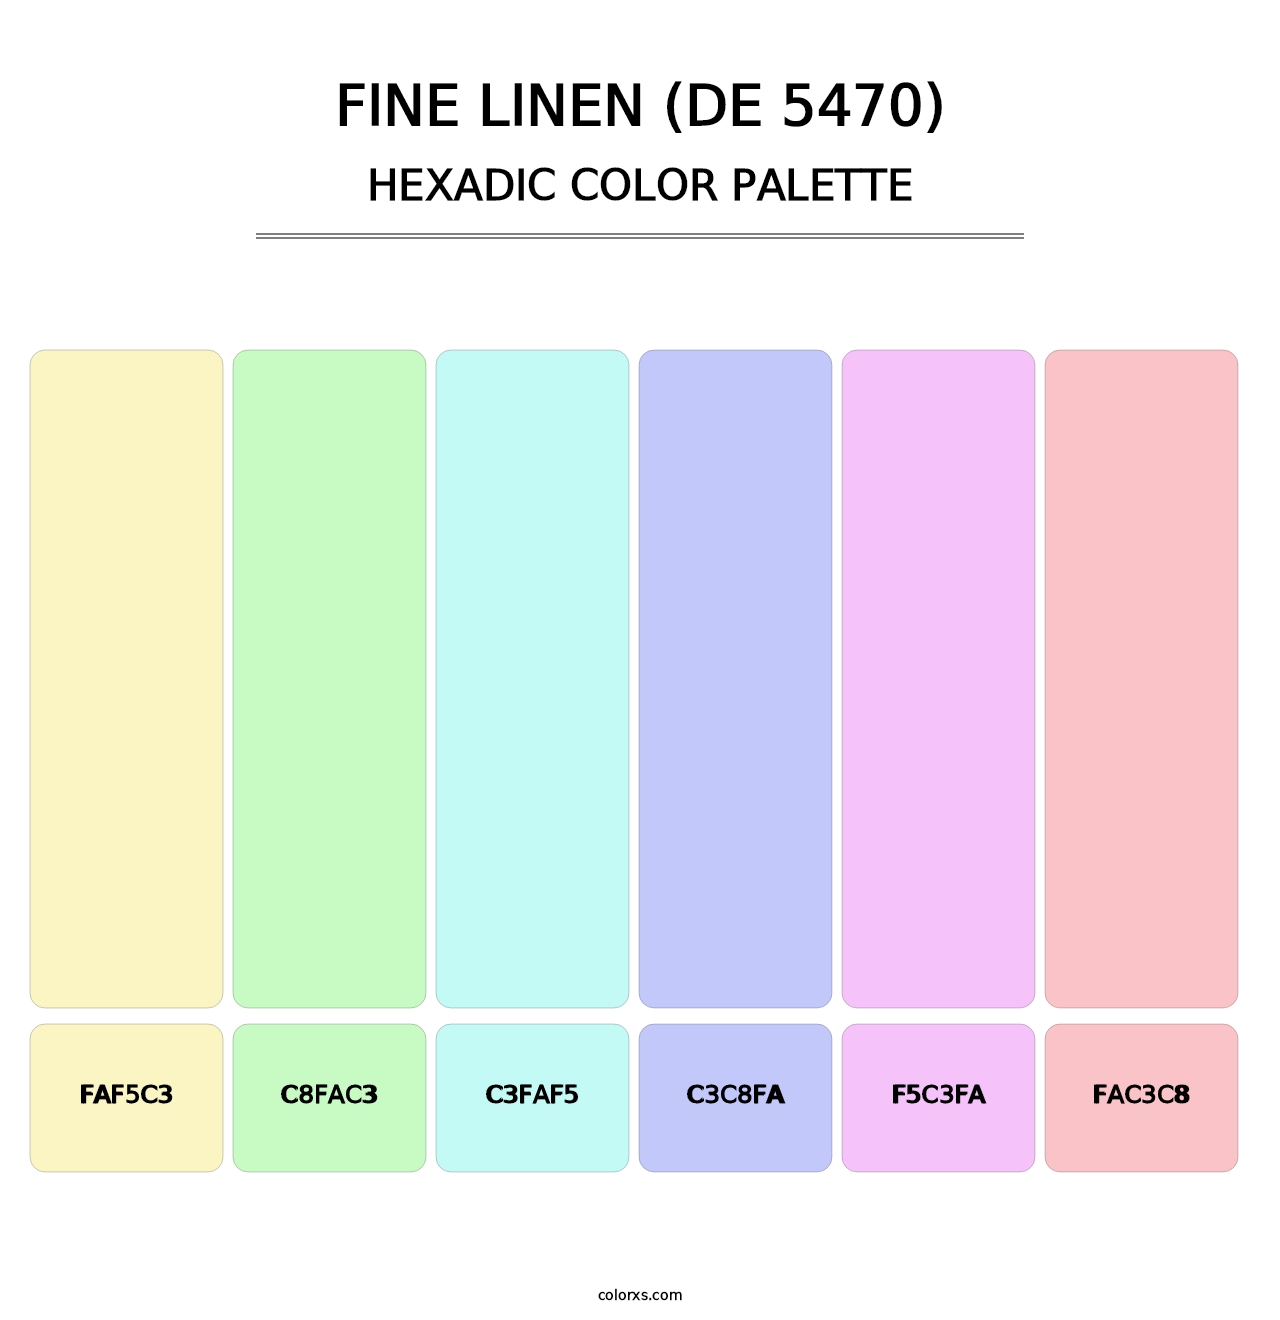 Fine Linen (DE 5470) - Hexadic Color Palette